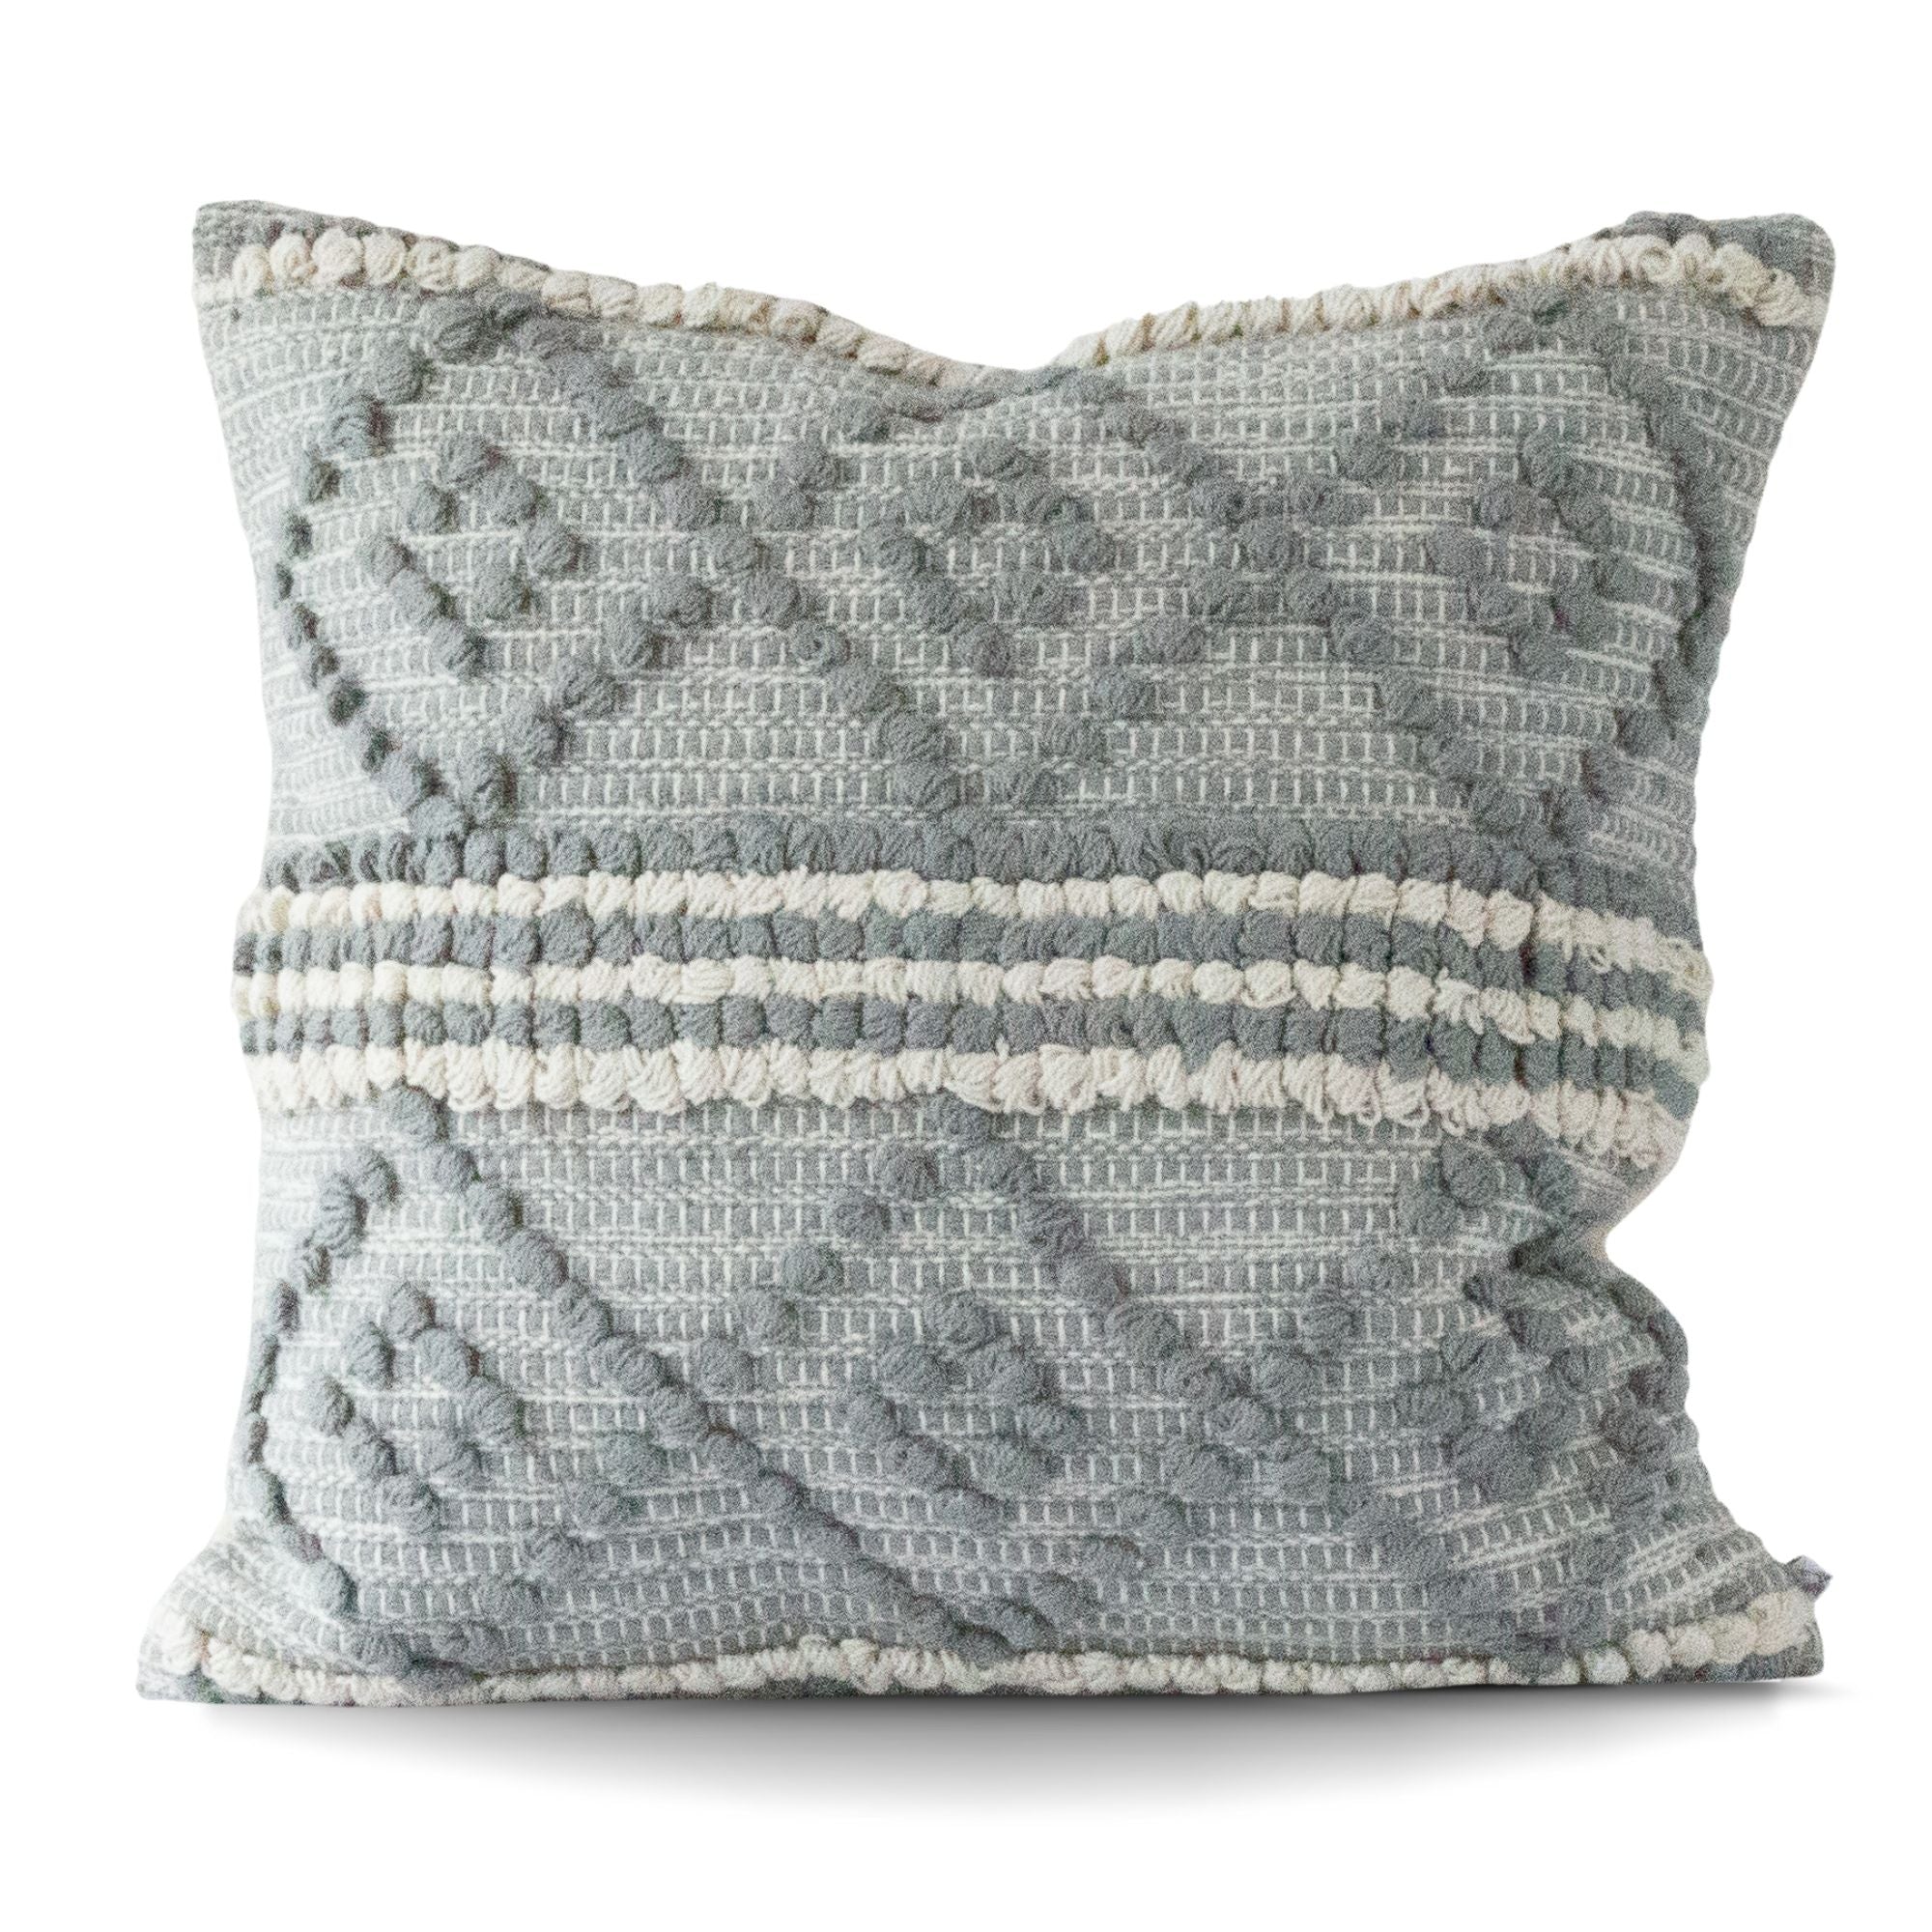 Gray & White Cotton Tajik Throw Cushion 18 x 18